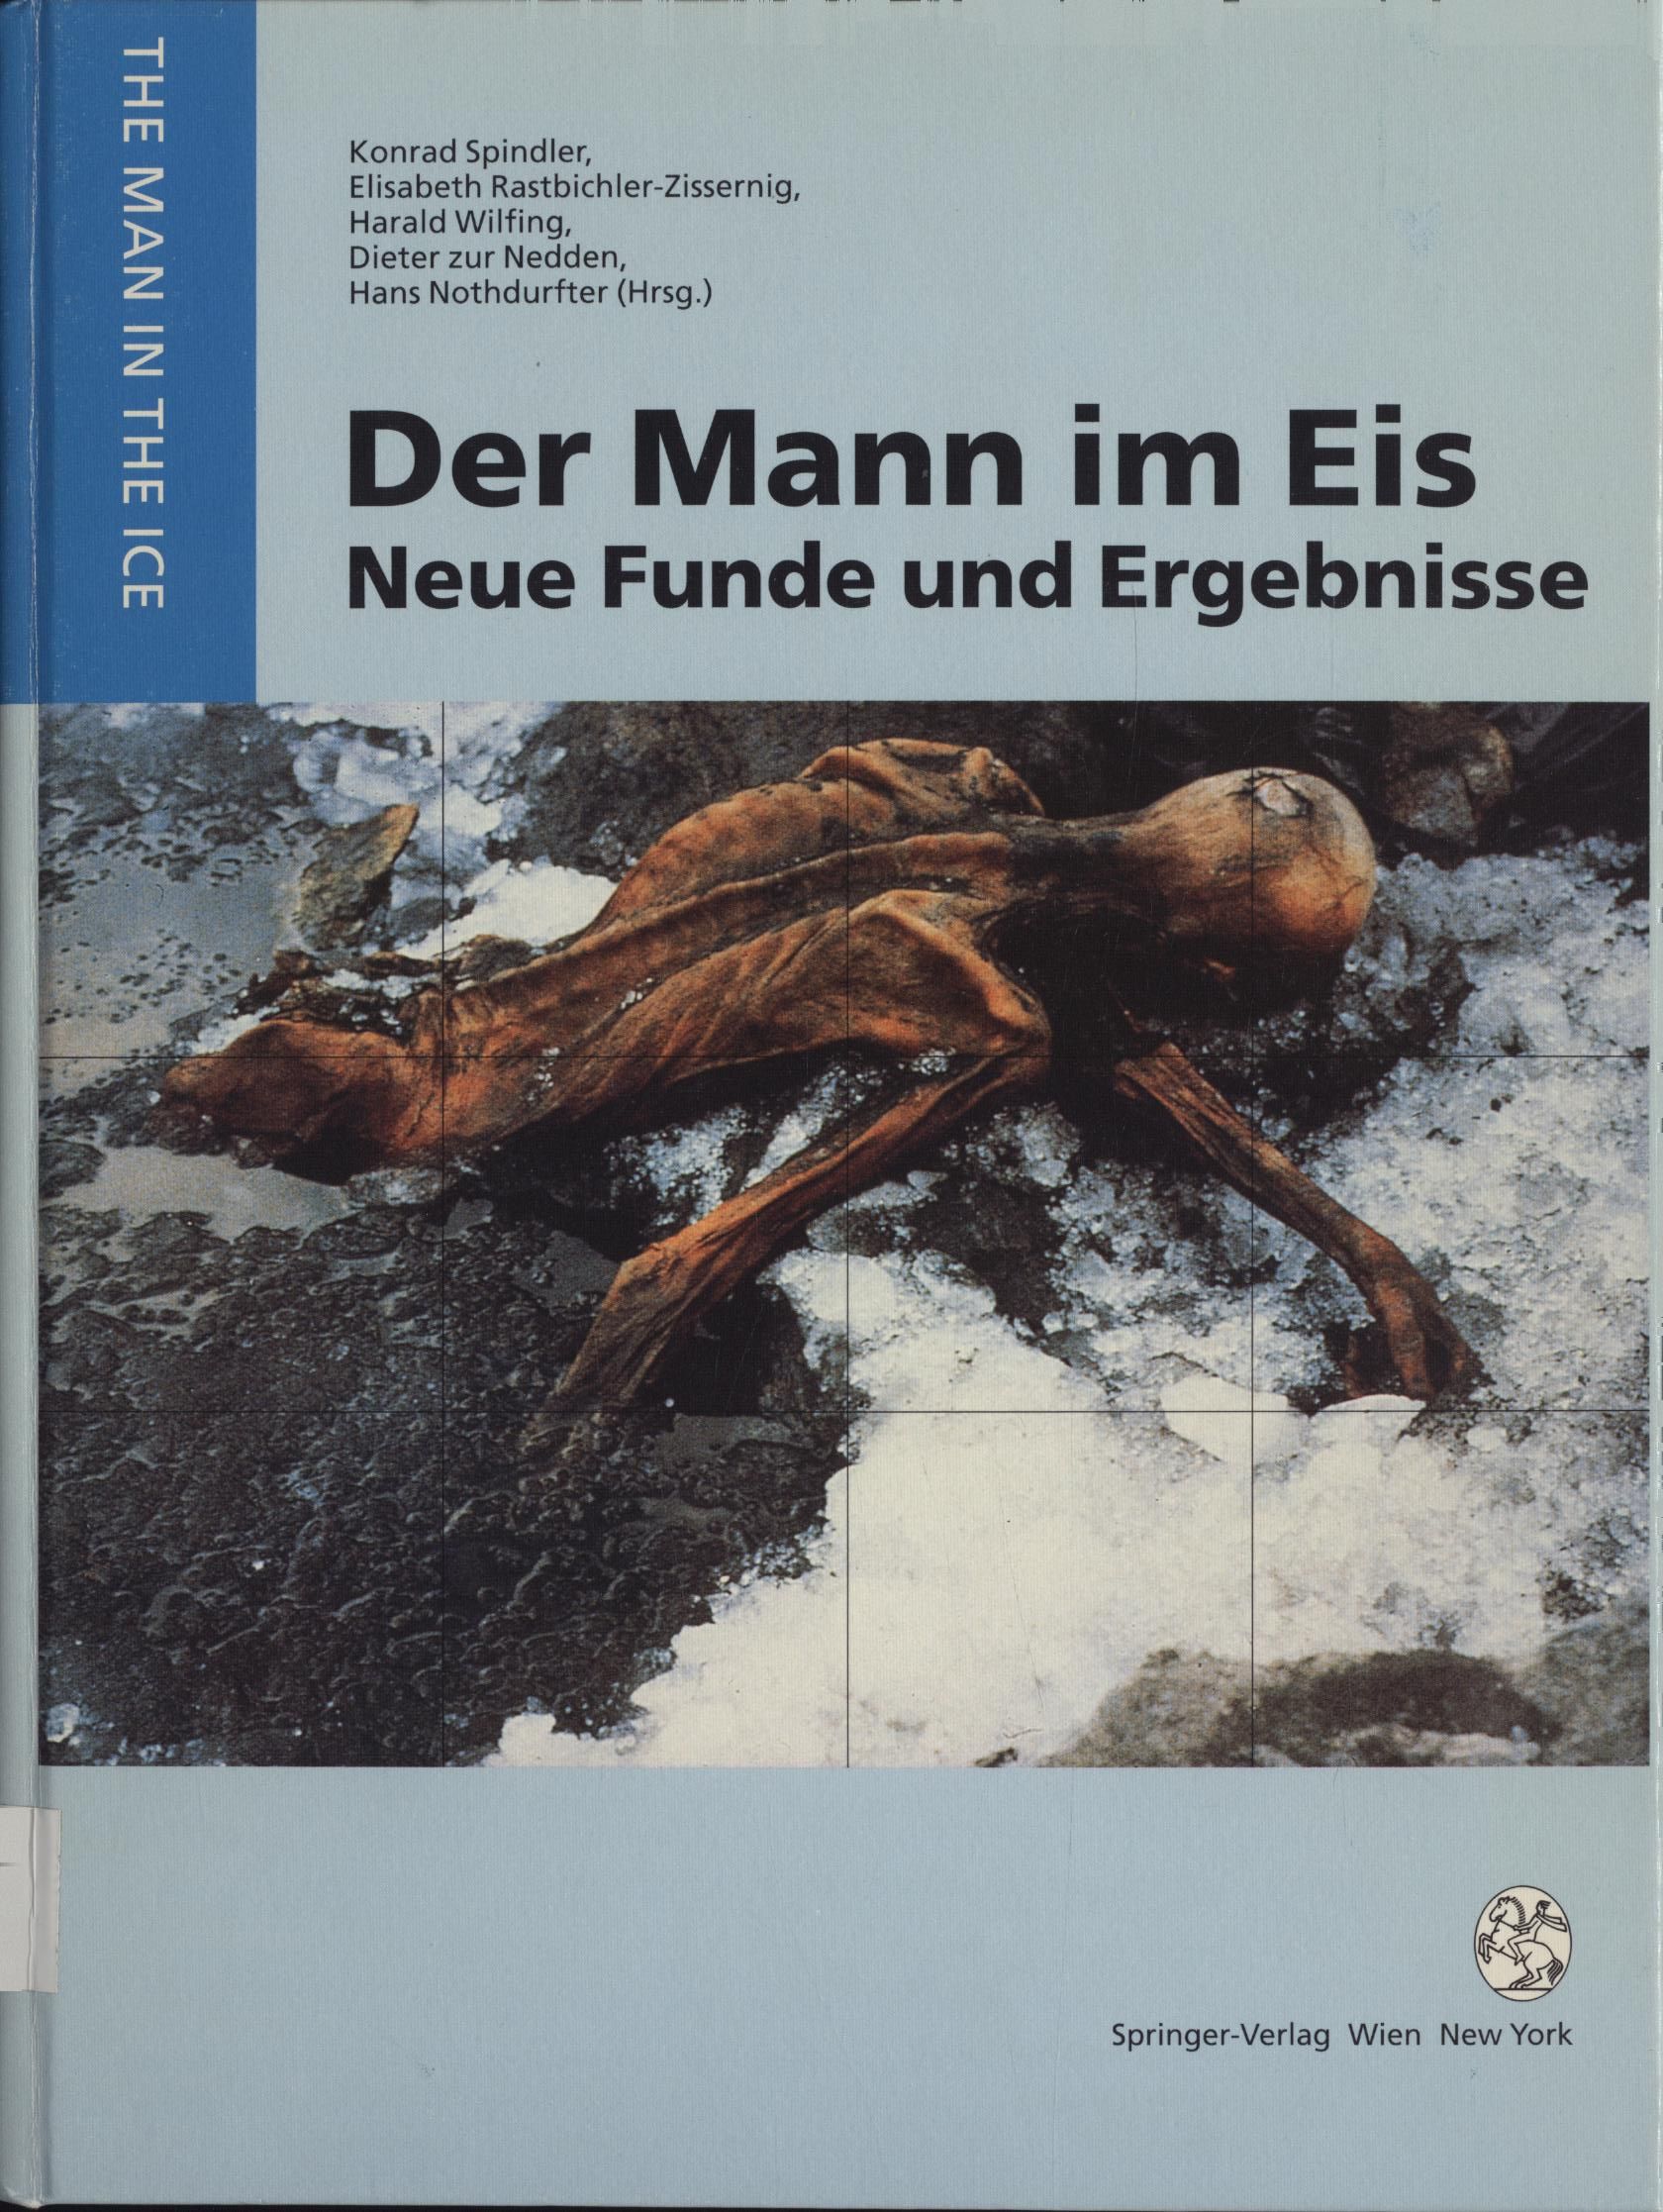 Der Mann im Eis Neue Funde und Ergebnisse - Spindler, Konrad und Elisabeth Rastbichler-Zissernig u. a.